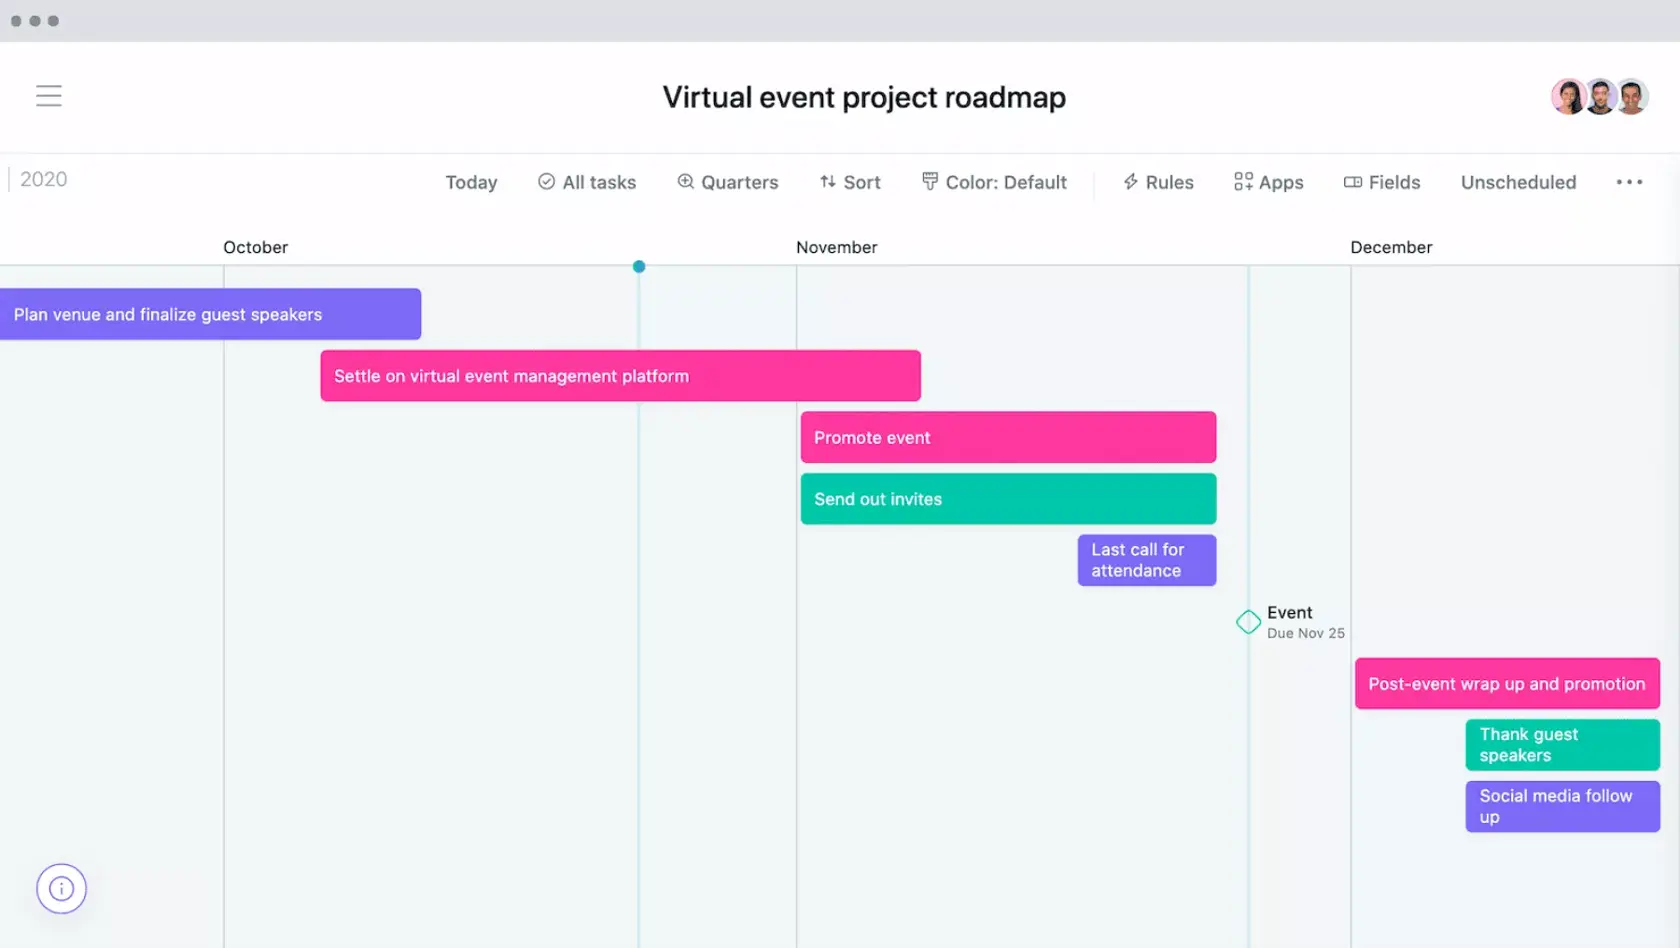 [Vista de Cronograma] Ejemplo de hoja de ruta de un proyecto para eventos virtuales en un cronograma al estilo de diagrama de Gantt en Asana